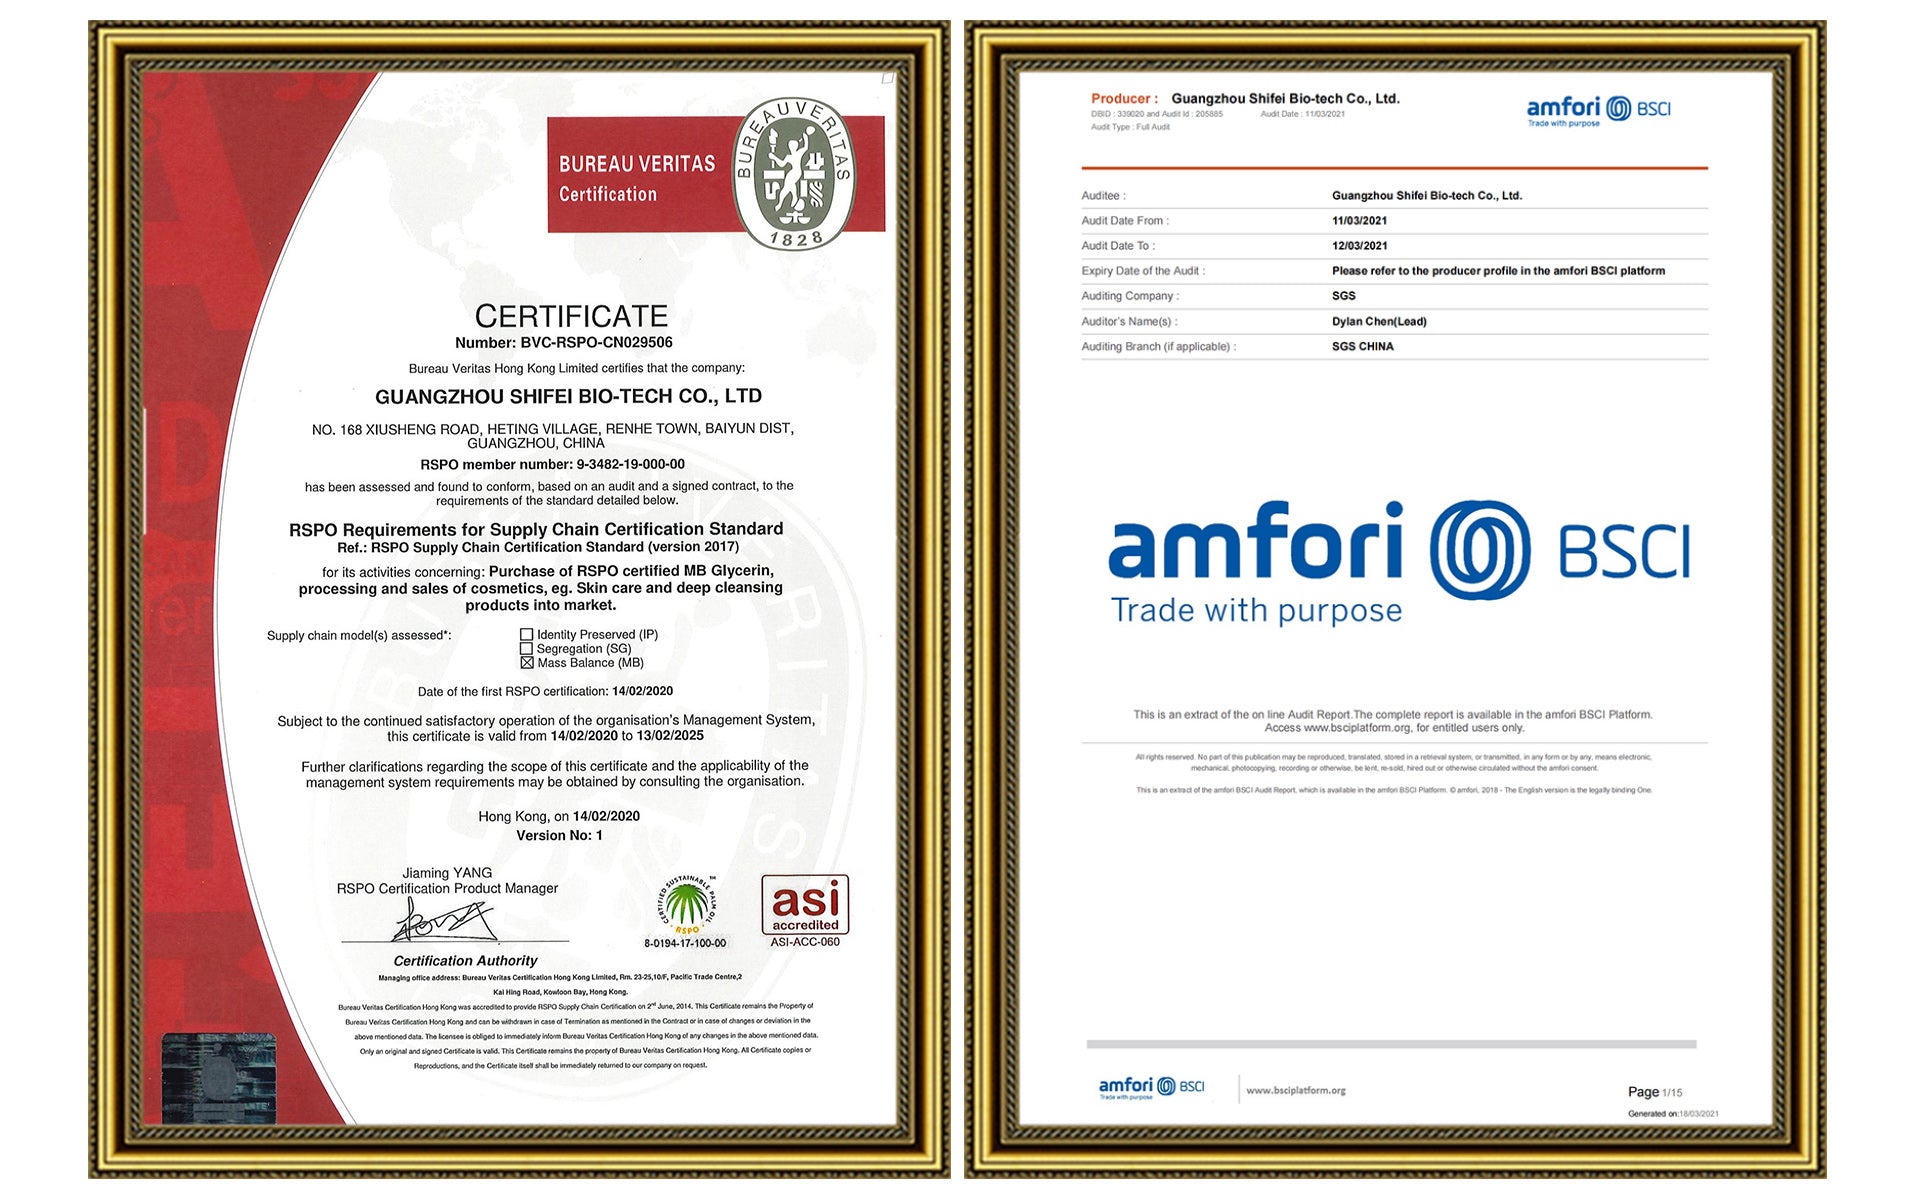 Shifei Bio-tech Certification by BV